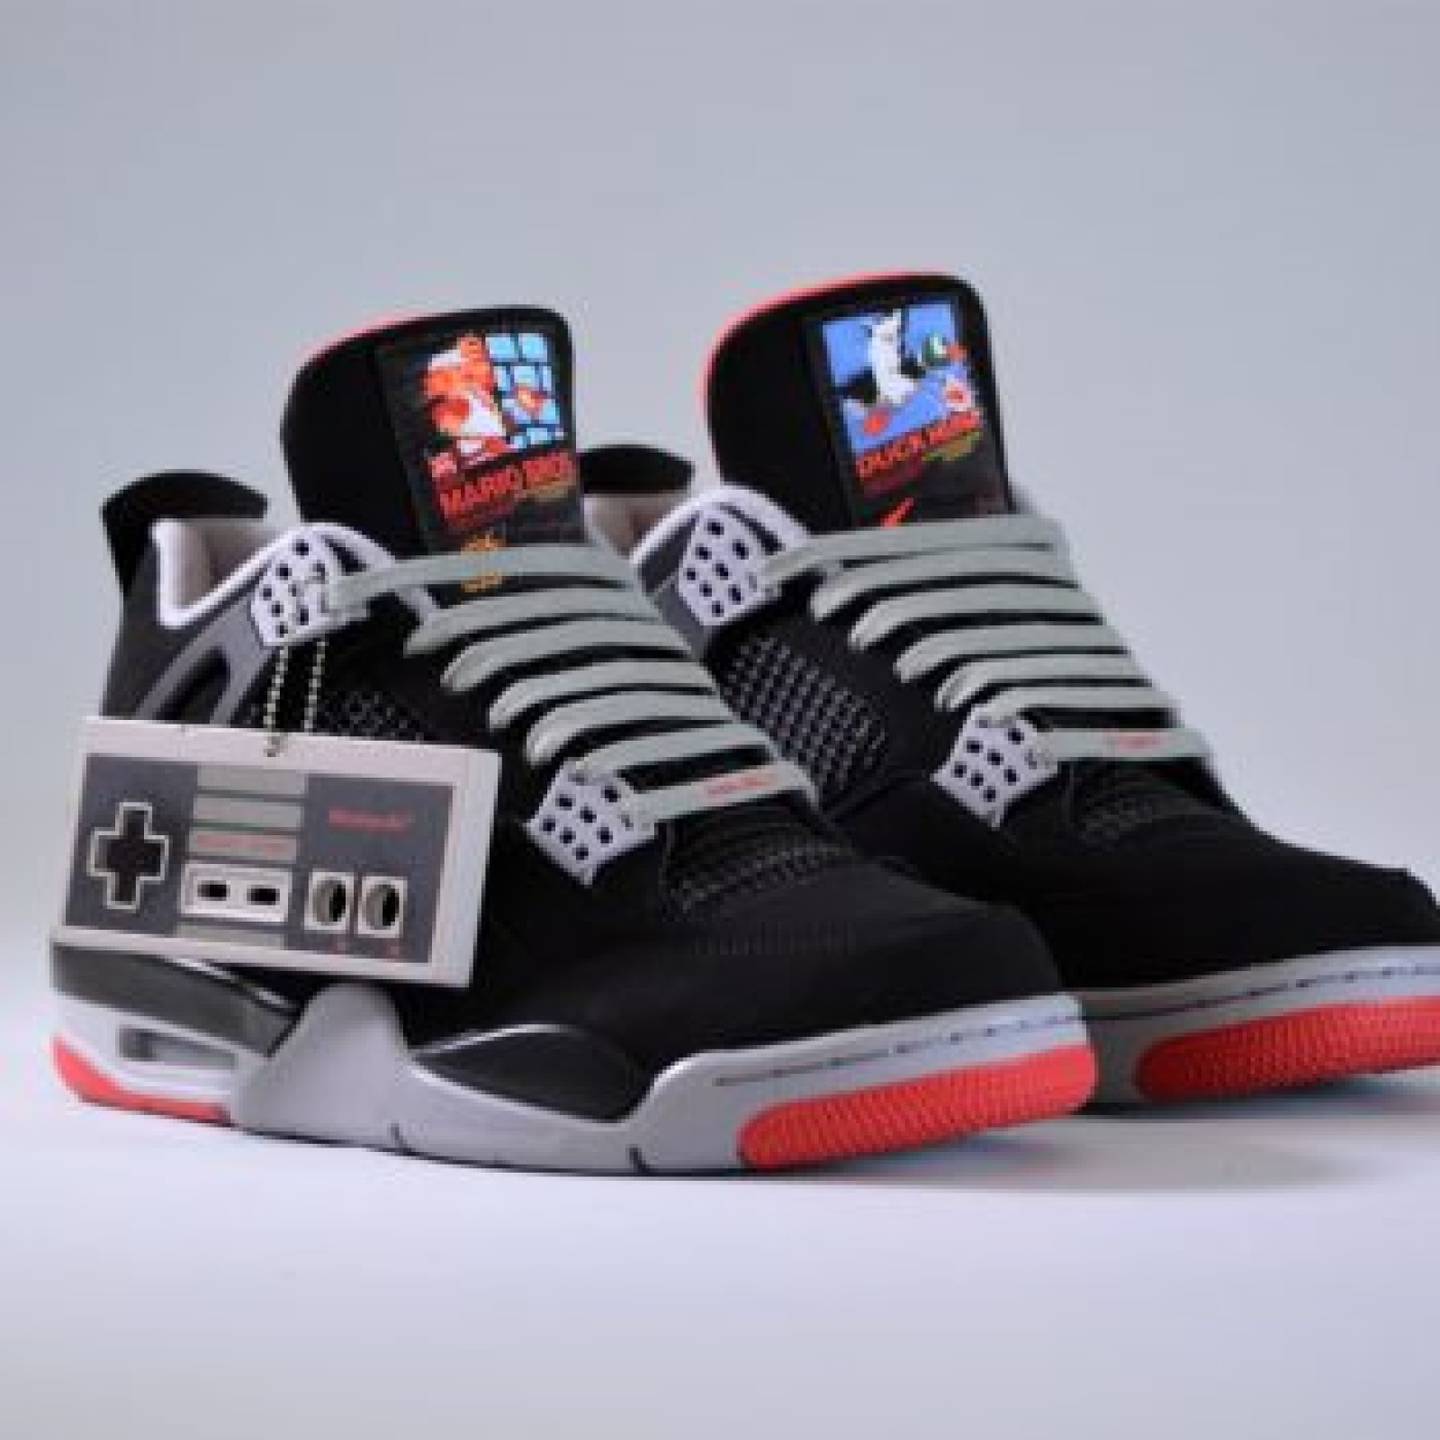 Nintendo x Air Jordan